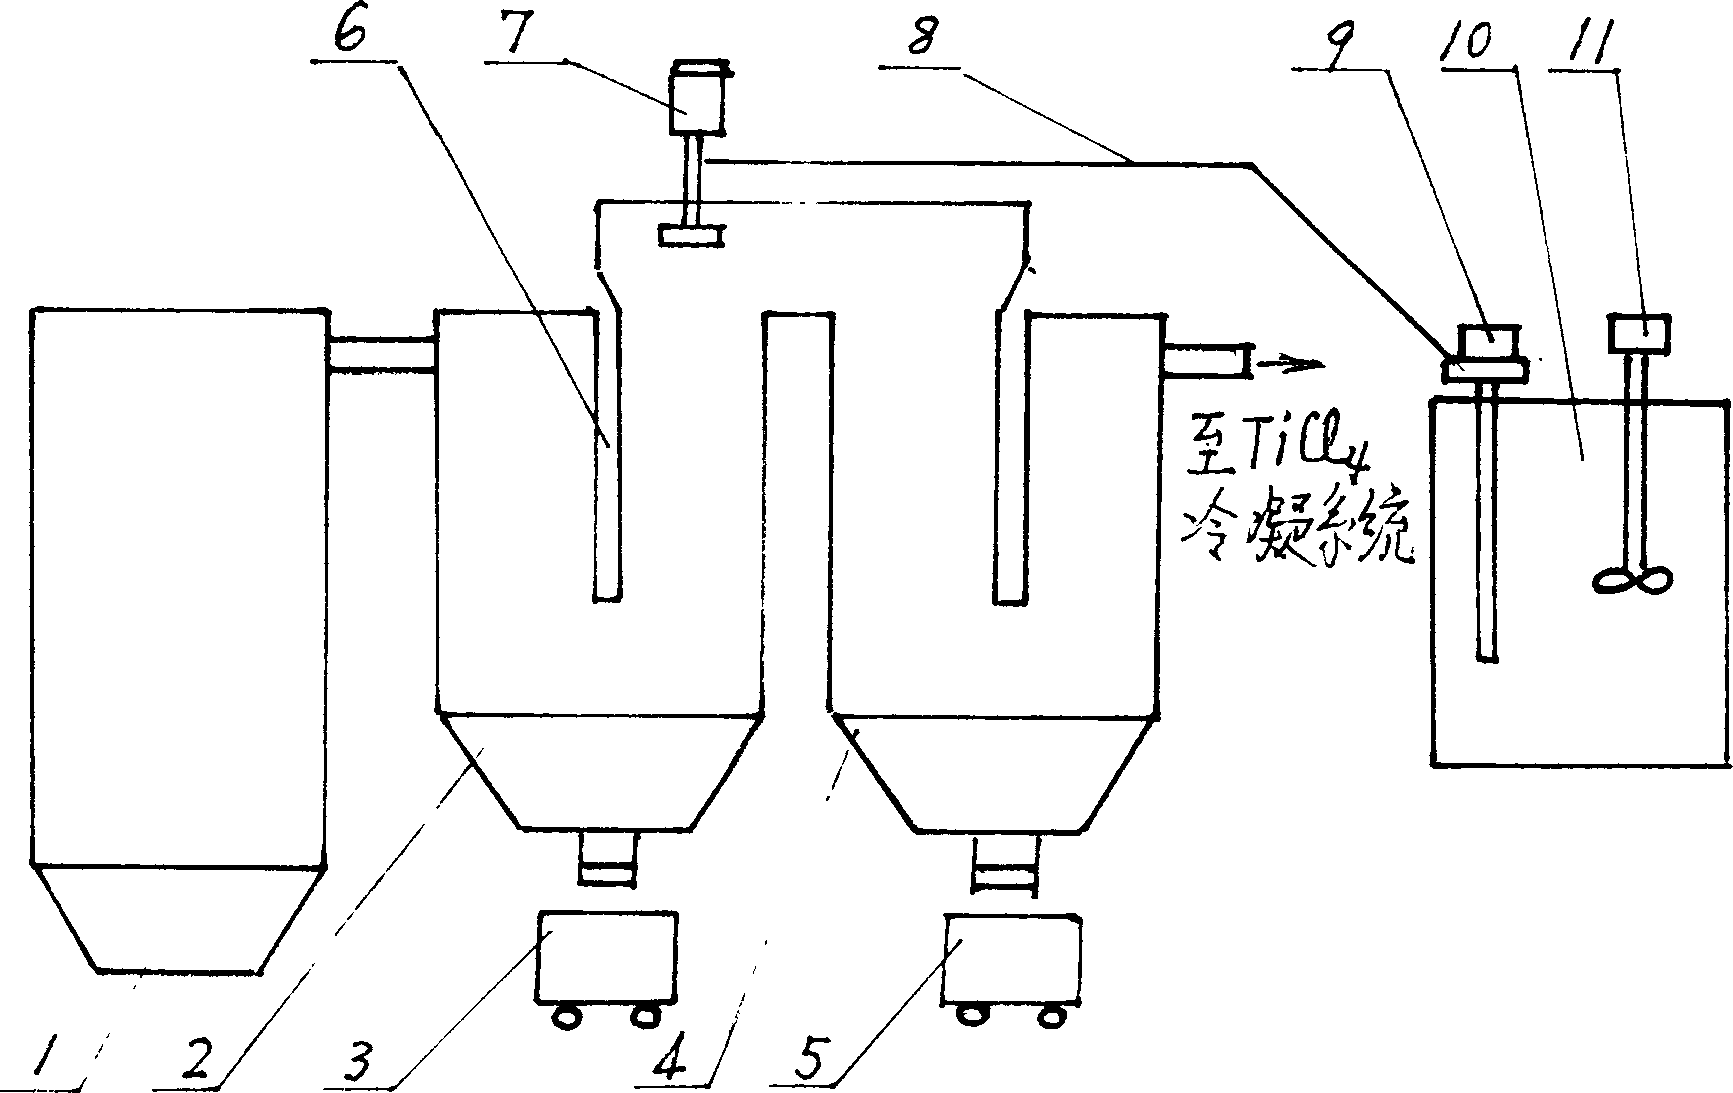 Technique and method for treating titanium tetrachloride slurry containing vanadium